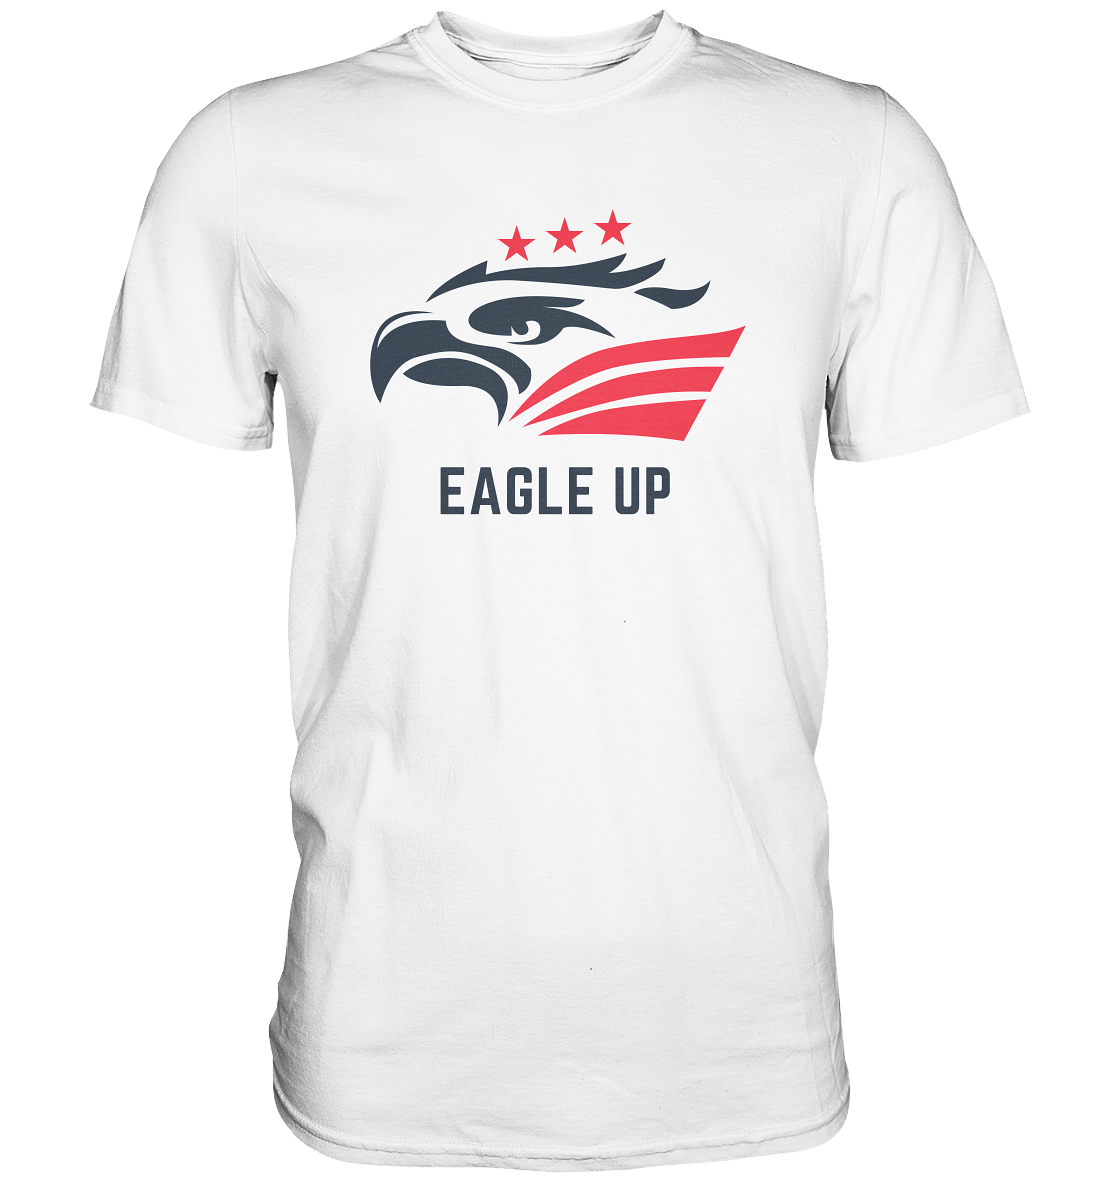 EAGLE UP - Basic Shirt